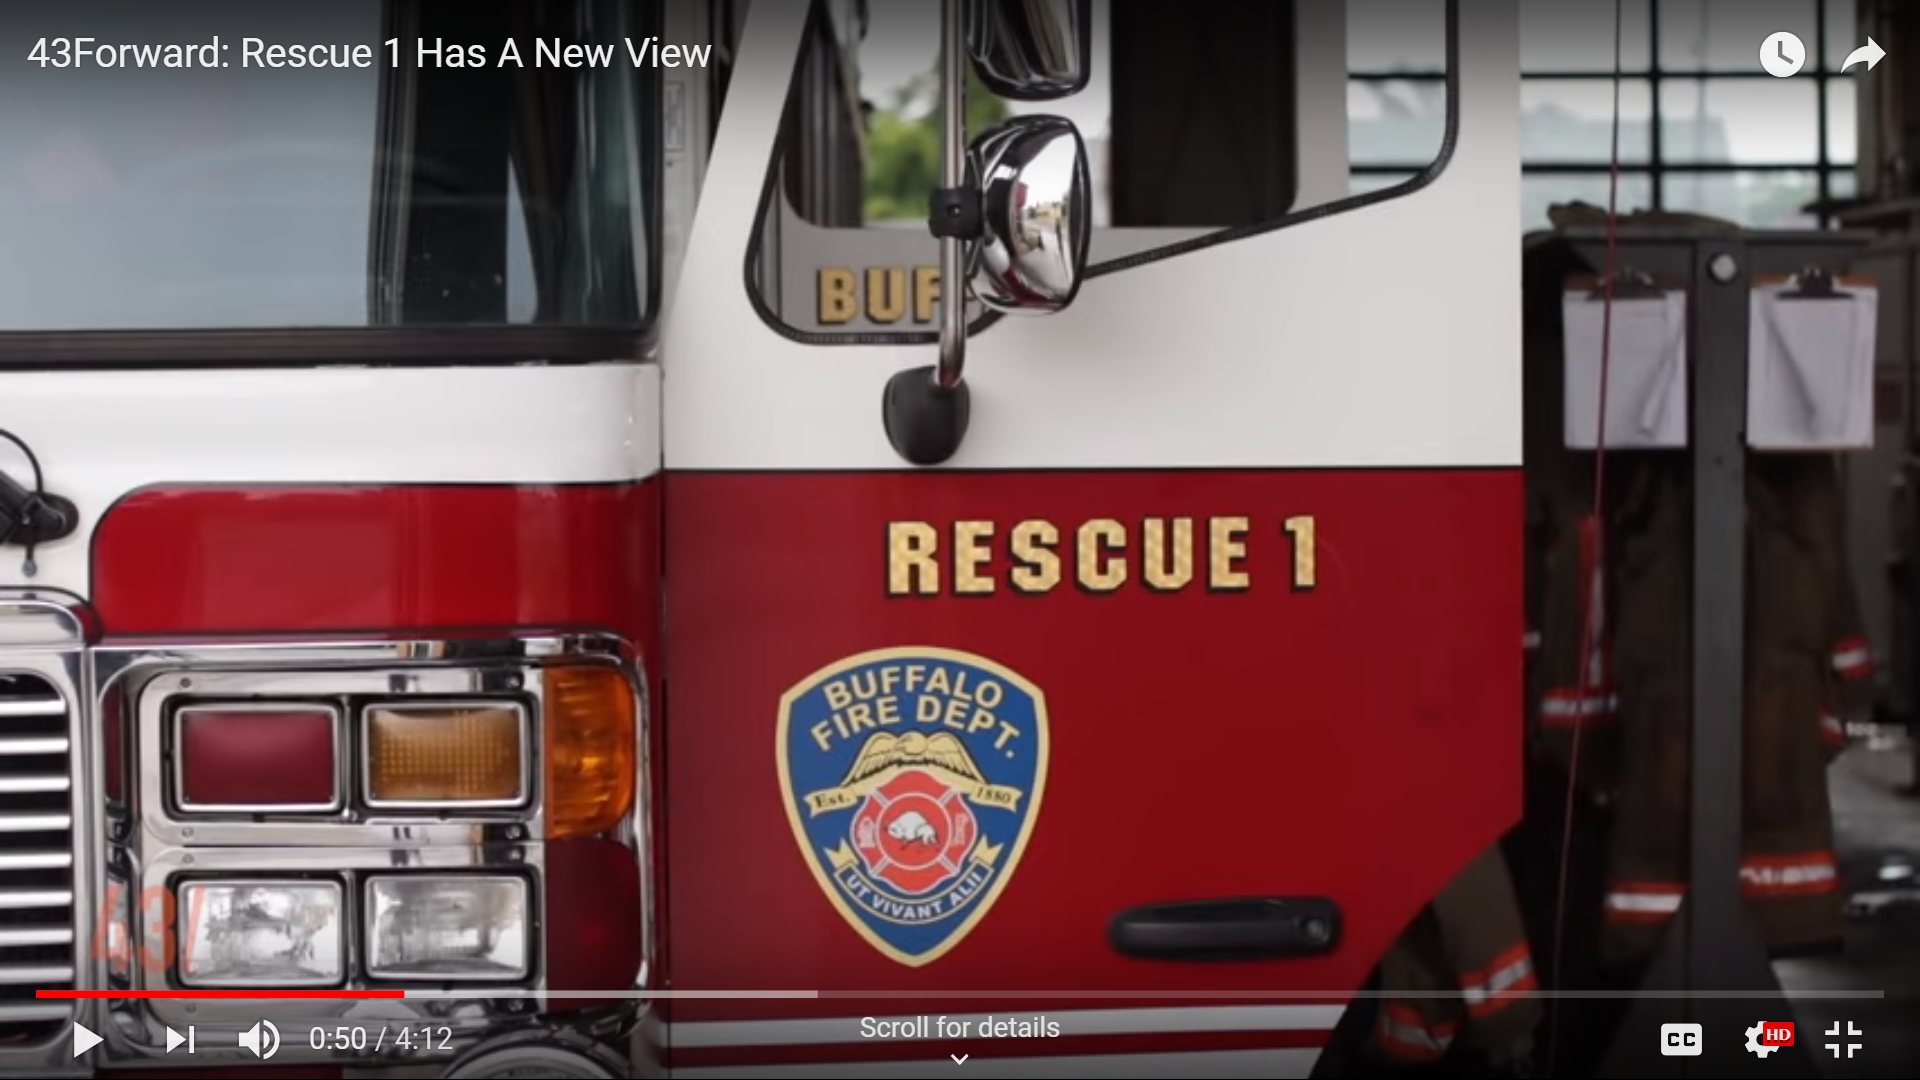 Buffalo Fire Rescue 1 – 43North